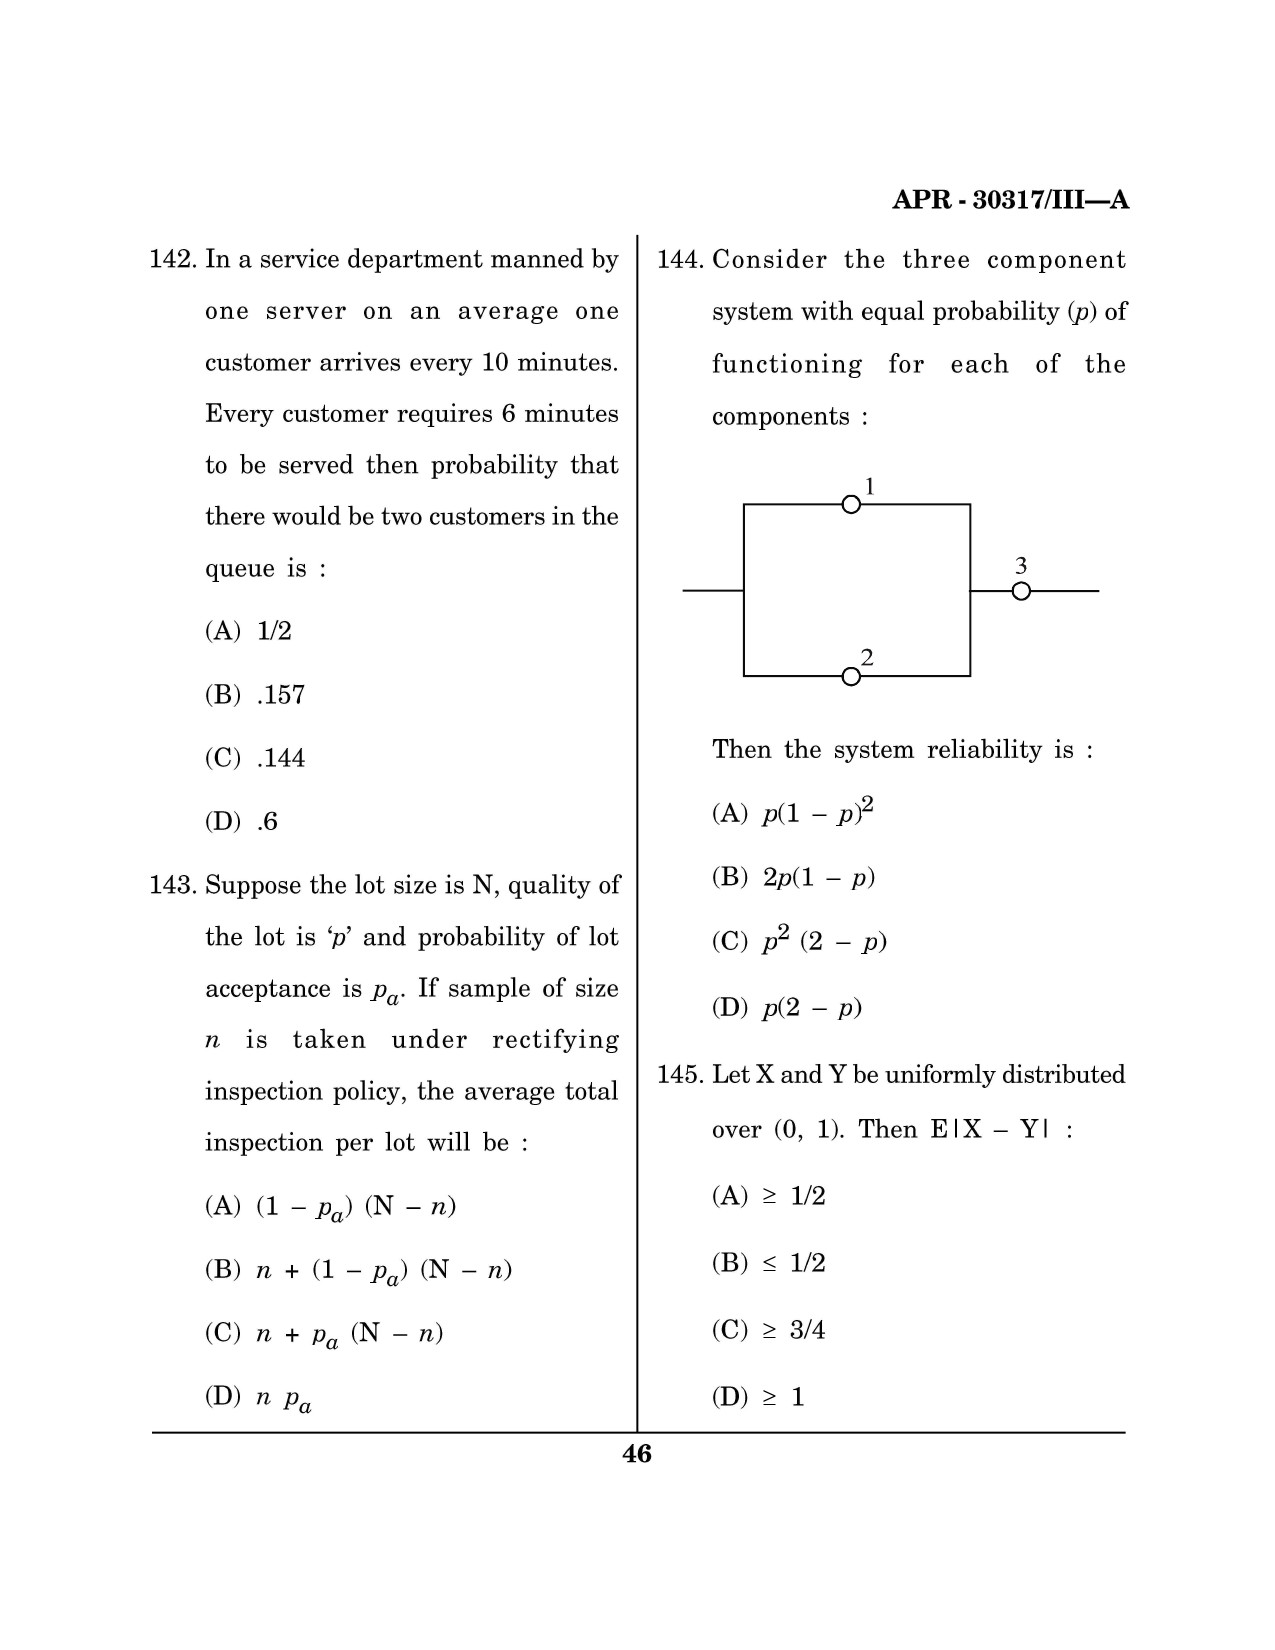 Maharashtra SET Mathematical Sciences Question Paper III April 2017 45